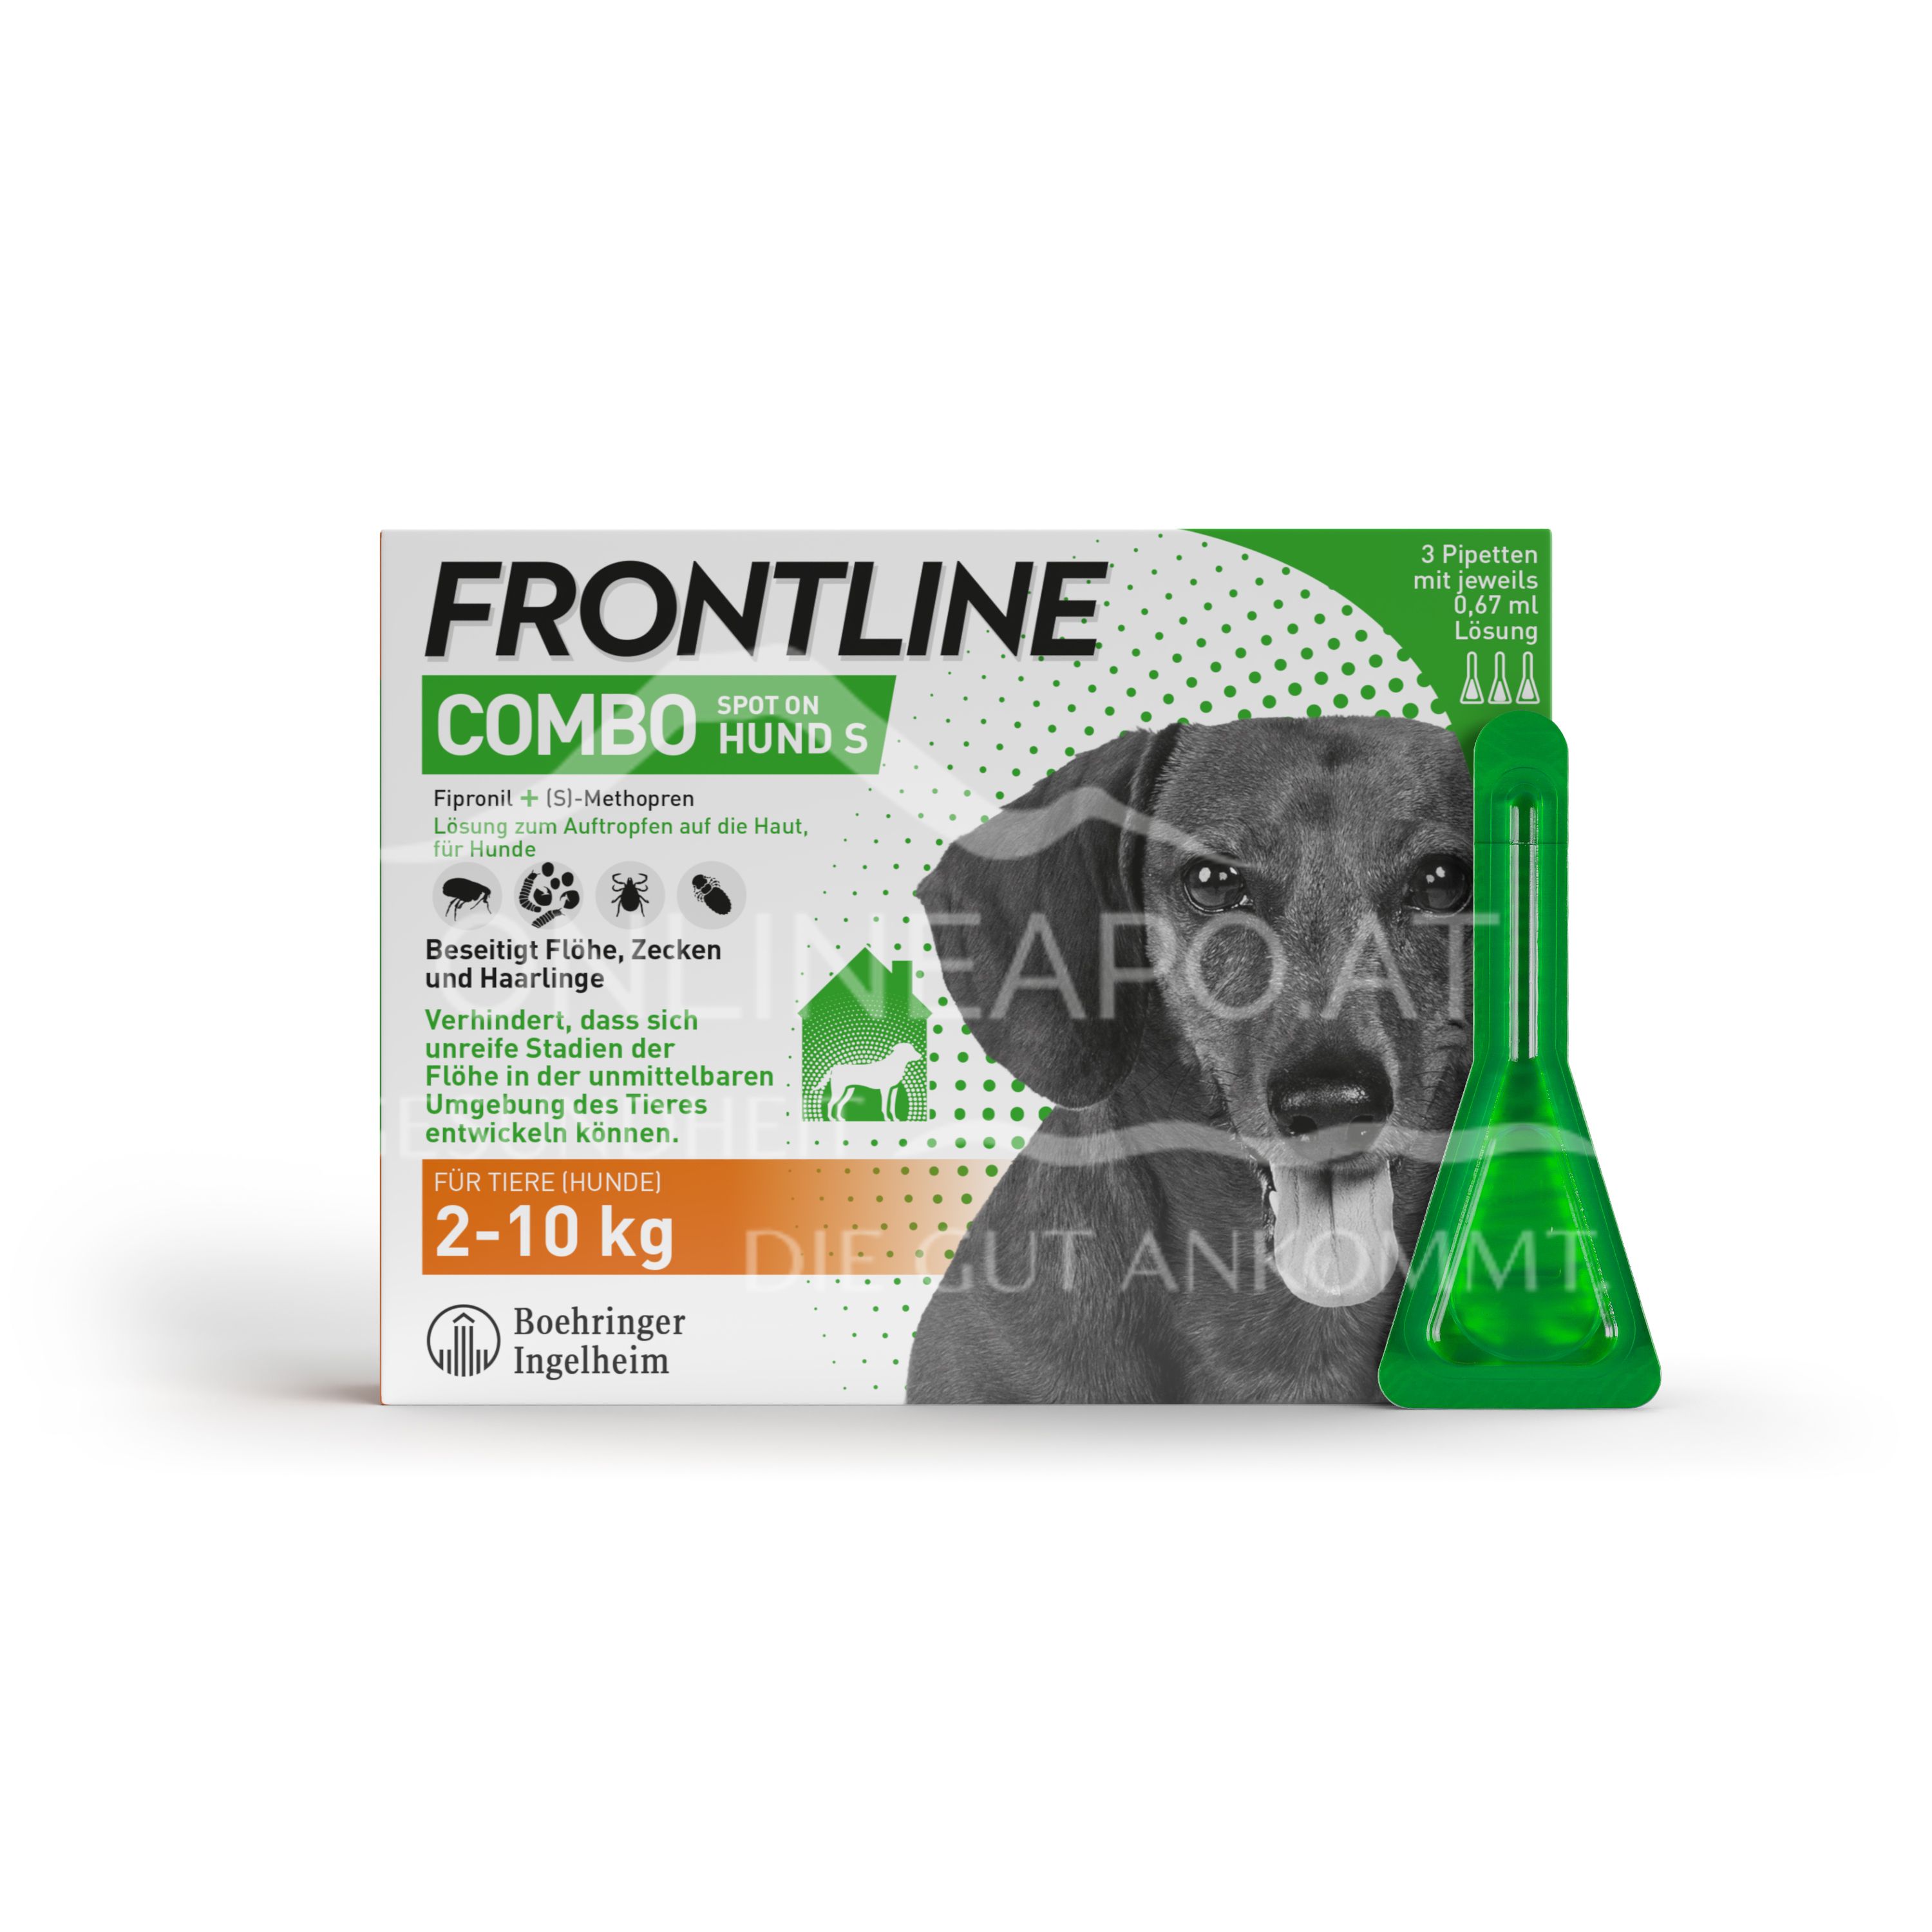 Frontline Combo Spot on Hund S Lösung zum Auftropfen auf die Haut 2 - 10 kg